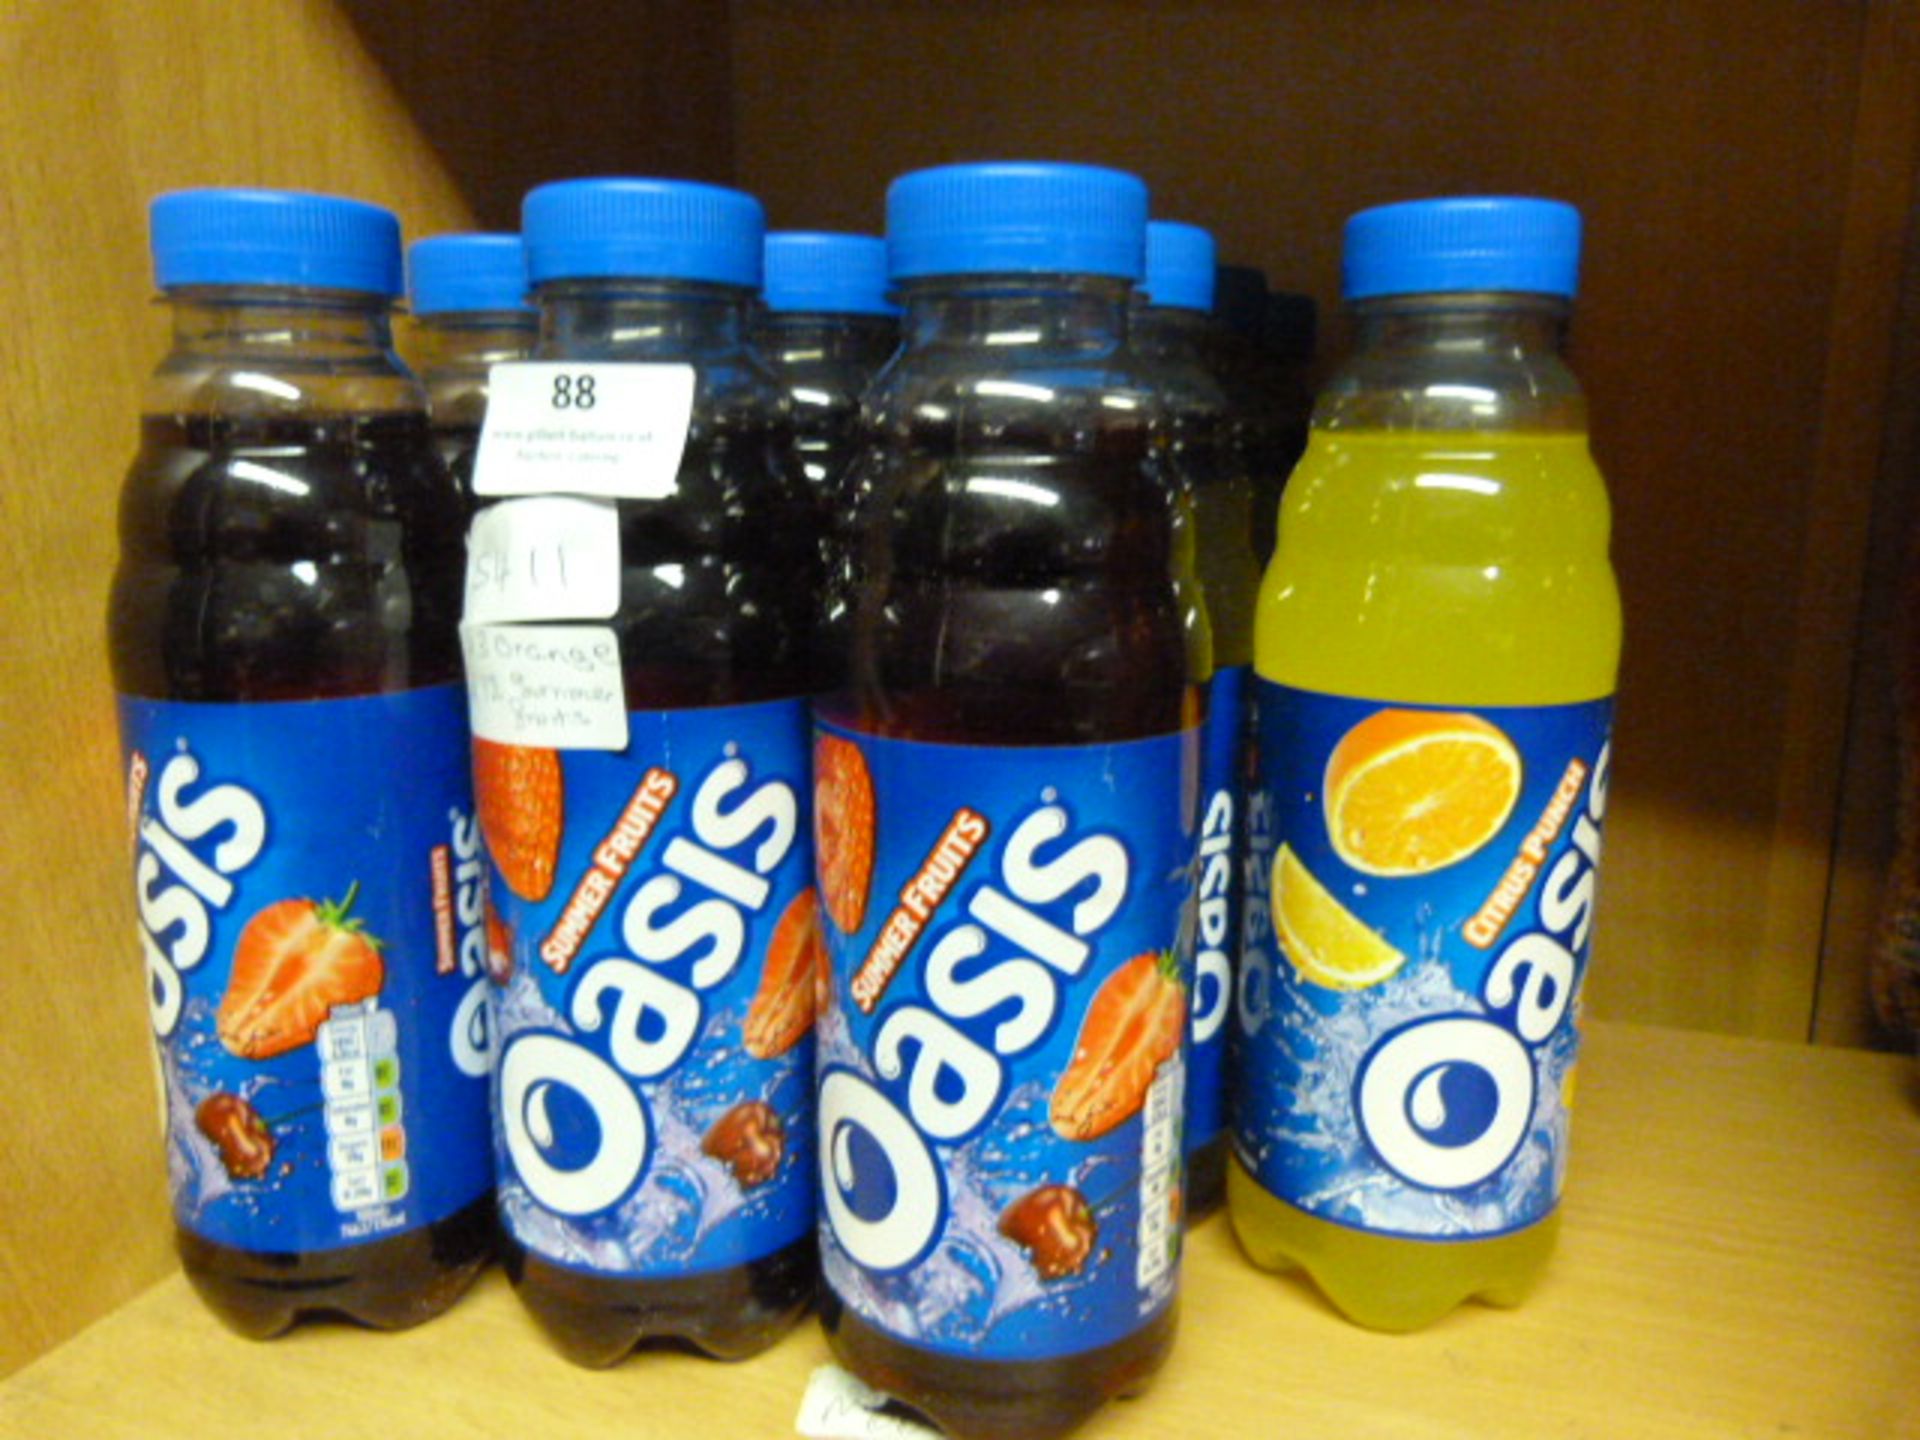 *Three Orange and Twelve Summer Fruit Oasis Drinks